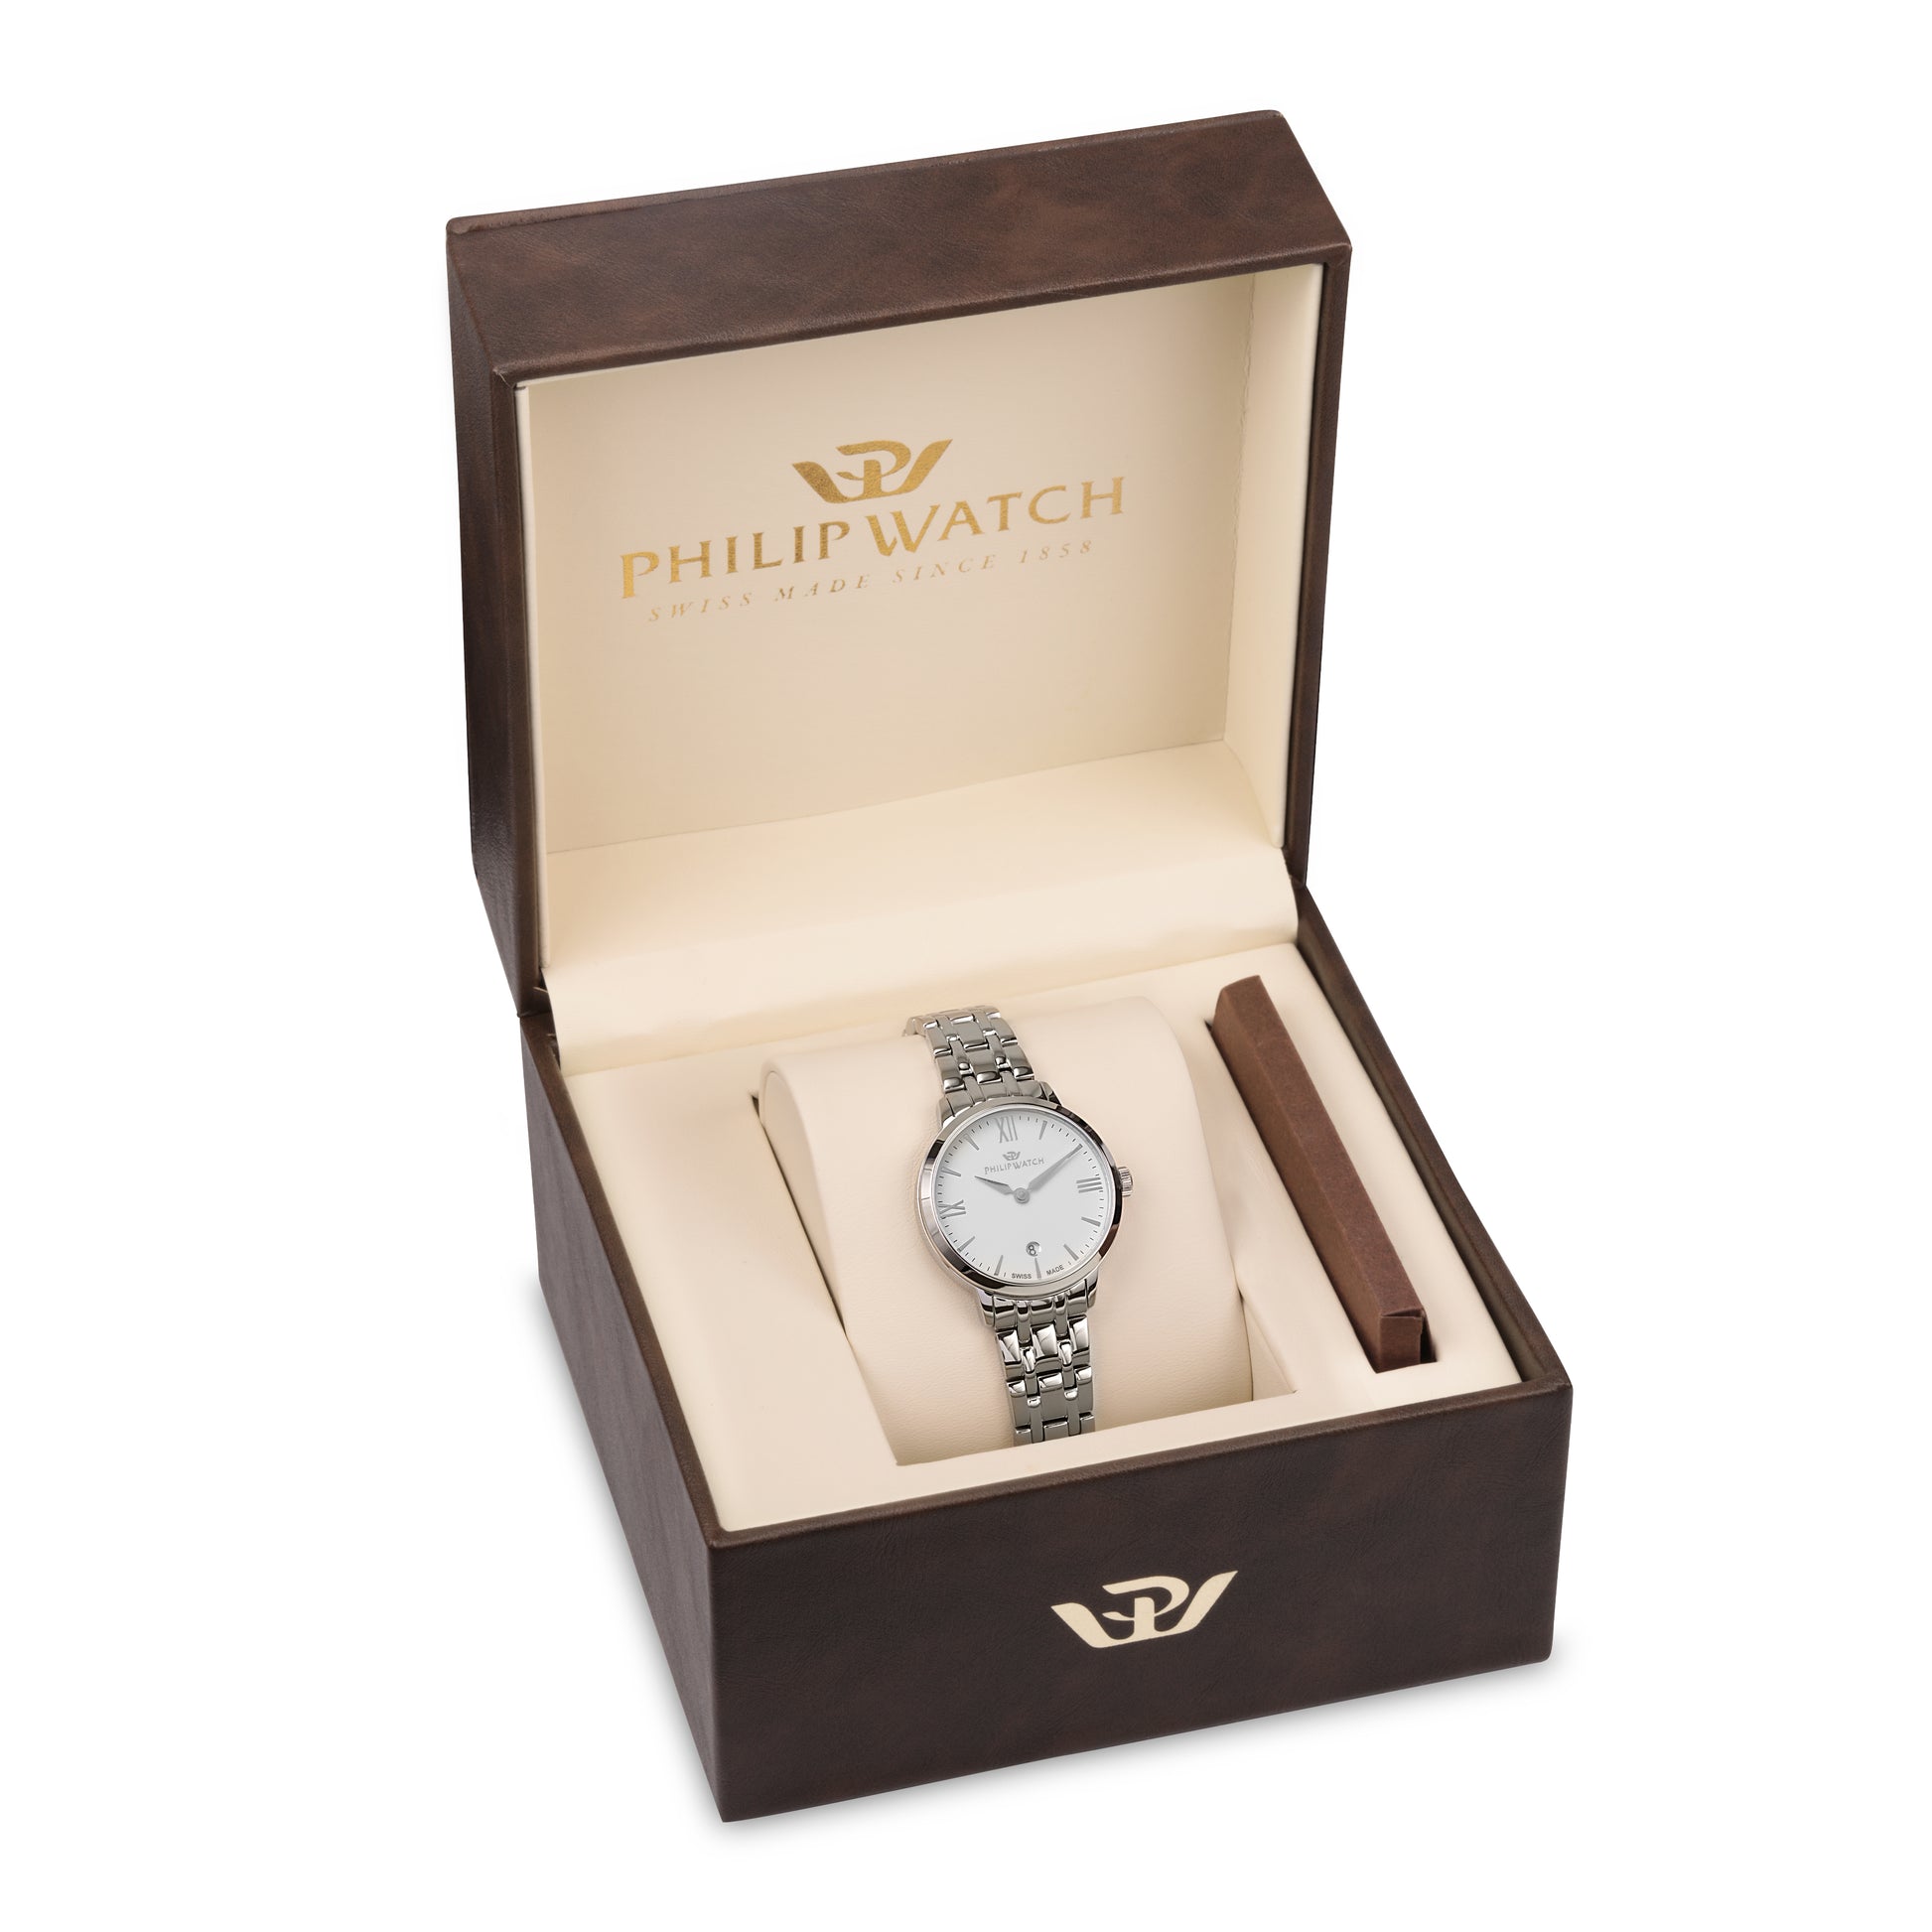 orologio donna philip watch audrey r8253150514